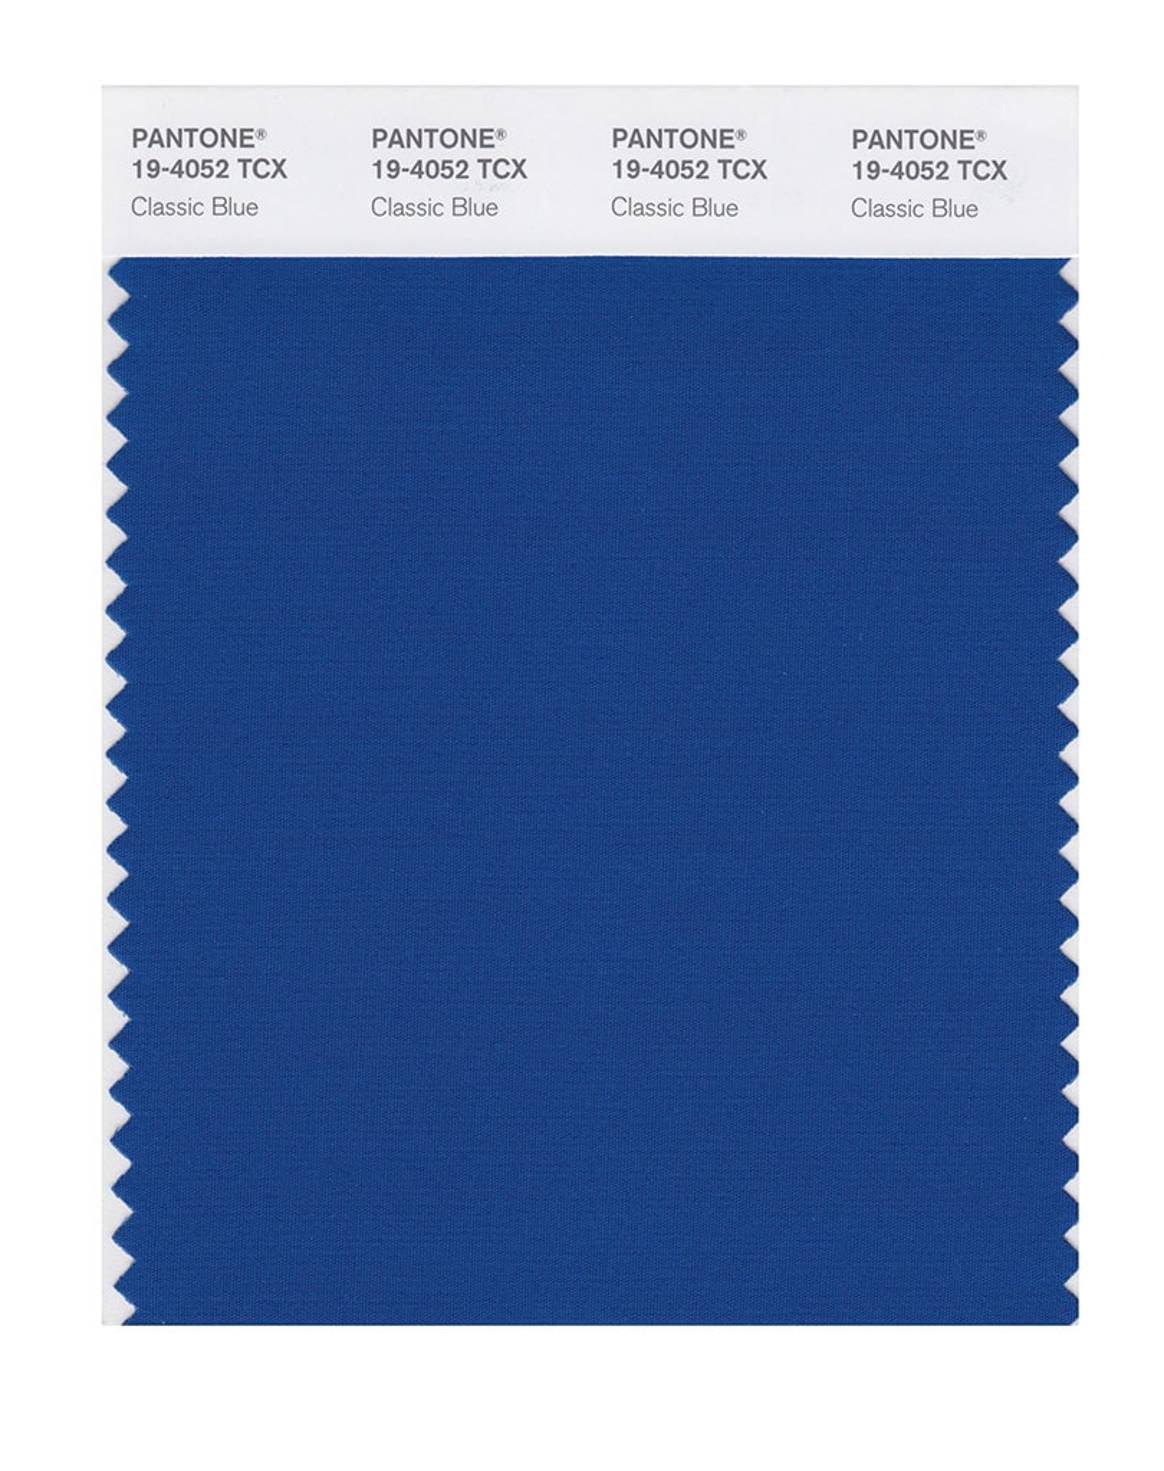 パントン、2020年の色「クラシックブルー」発表